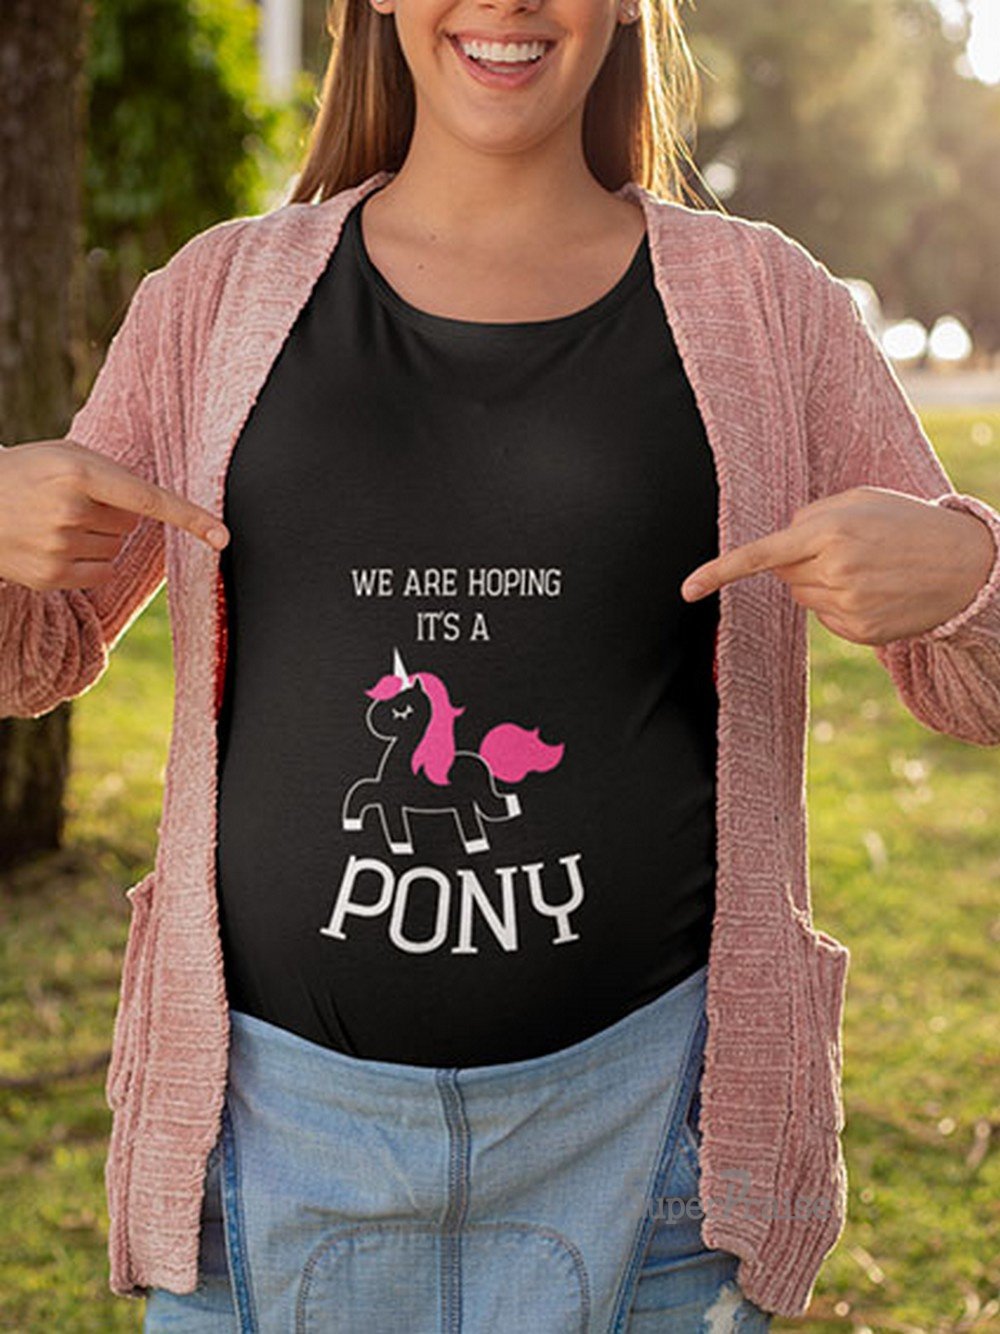 It's A Pony Pregnancy T Shirts